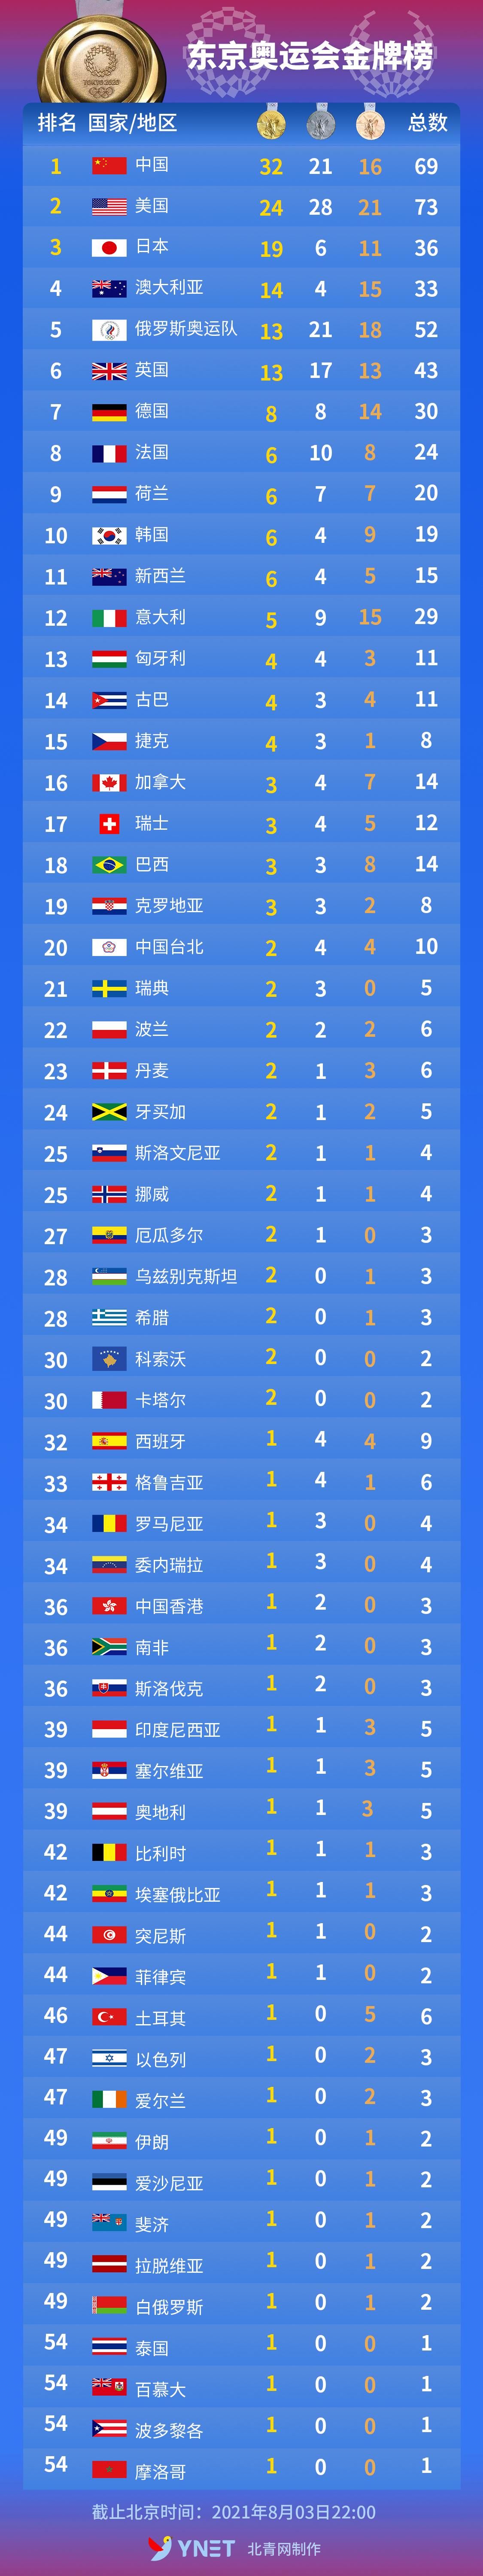 上一届奥运会中国金牌数，上一届奥运会中国的金牌数!